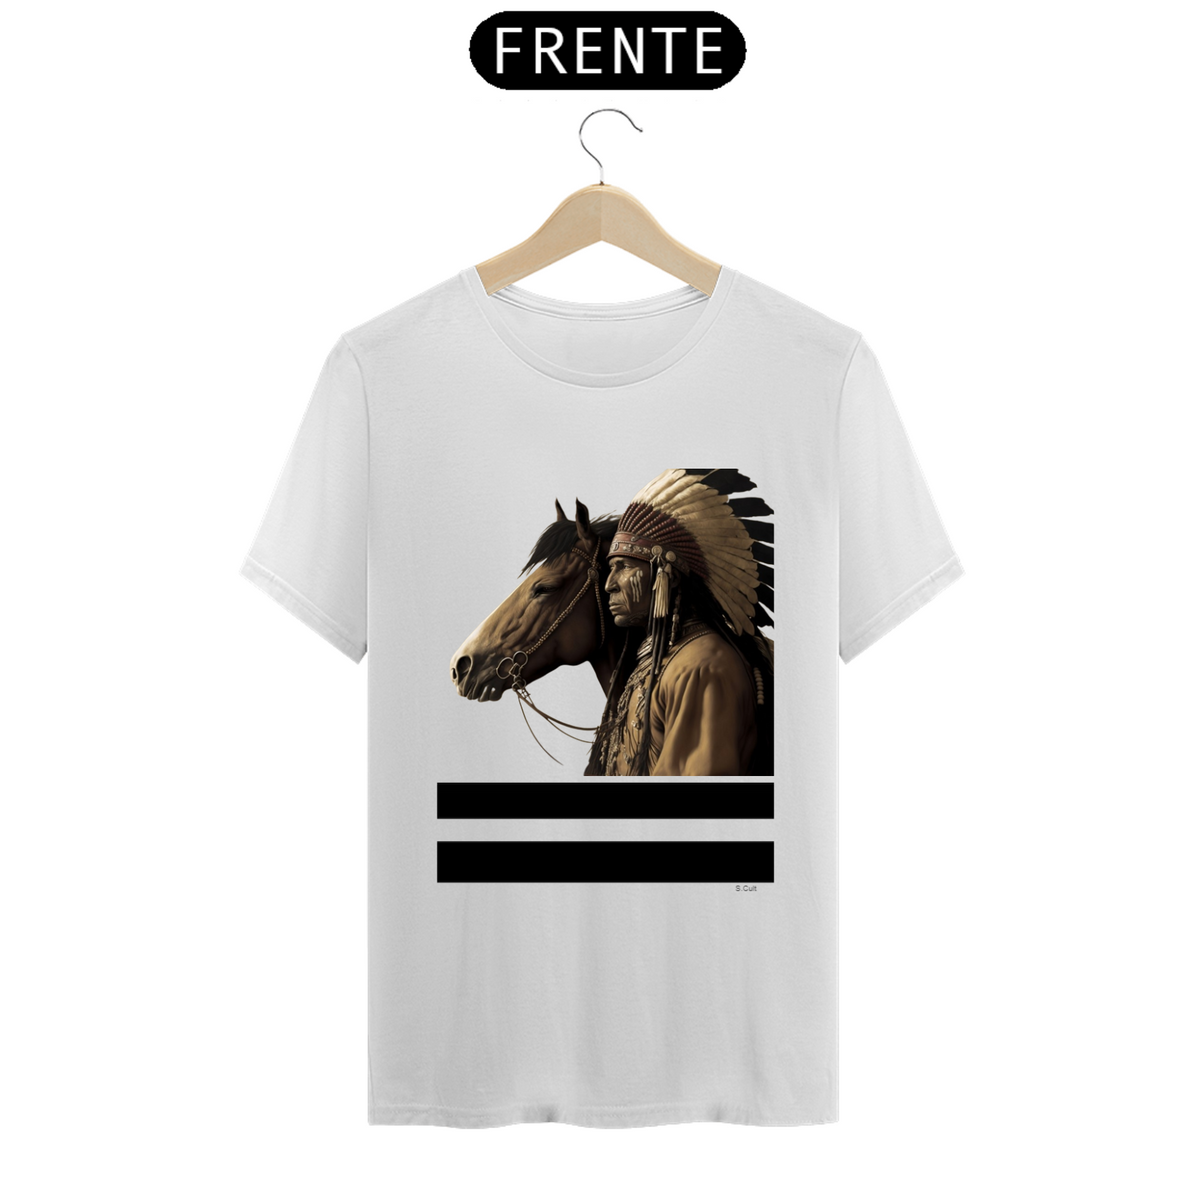 Nome do produto: T.Shirt Coleção Etnias- Ref.Nativo Americano - Apache com cavalo